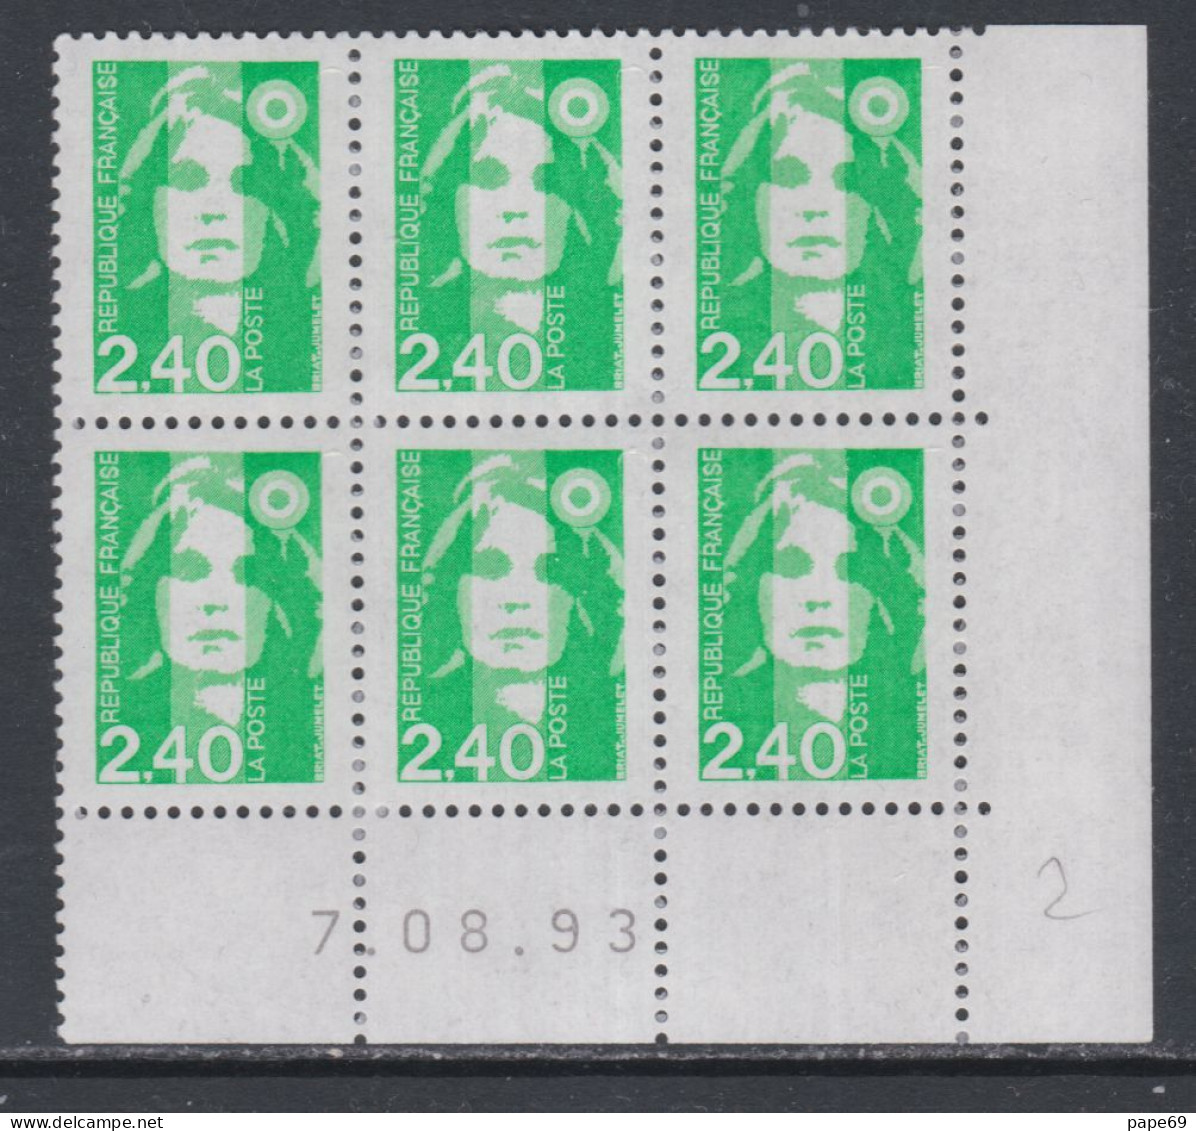 France N° 2820 XX Marianne De Briat 2 F. 40 Vert En Bloc De 6 Coin Daté Du 7 - 08 - 93 ;  Sans Charnière TB - 1990-1999